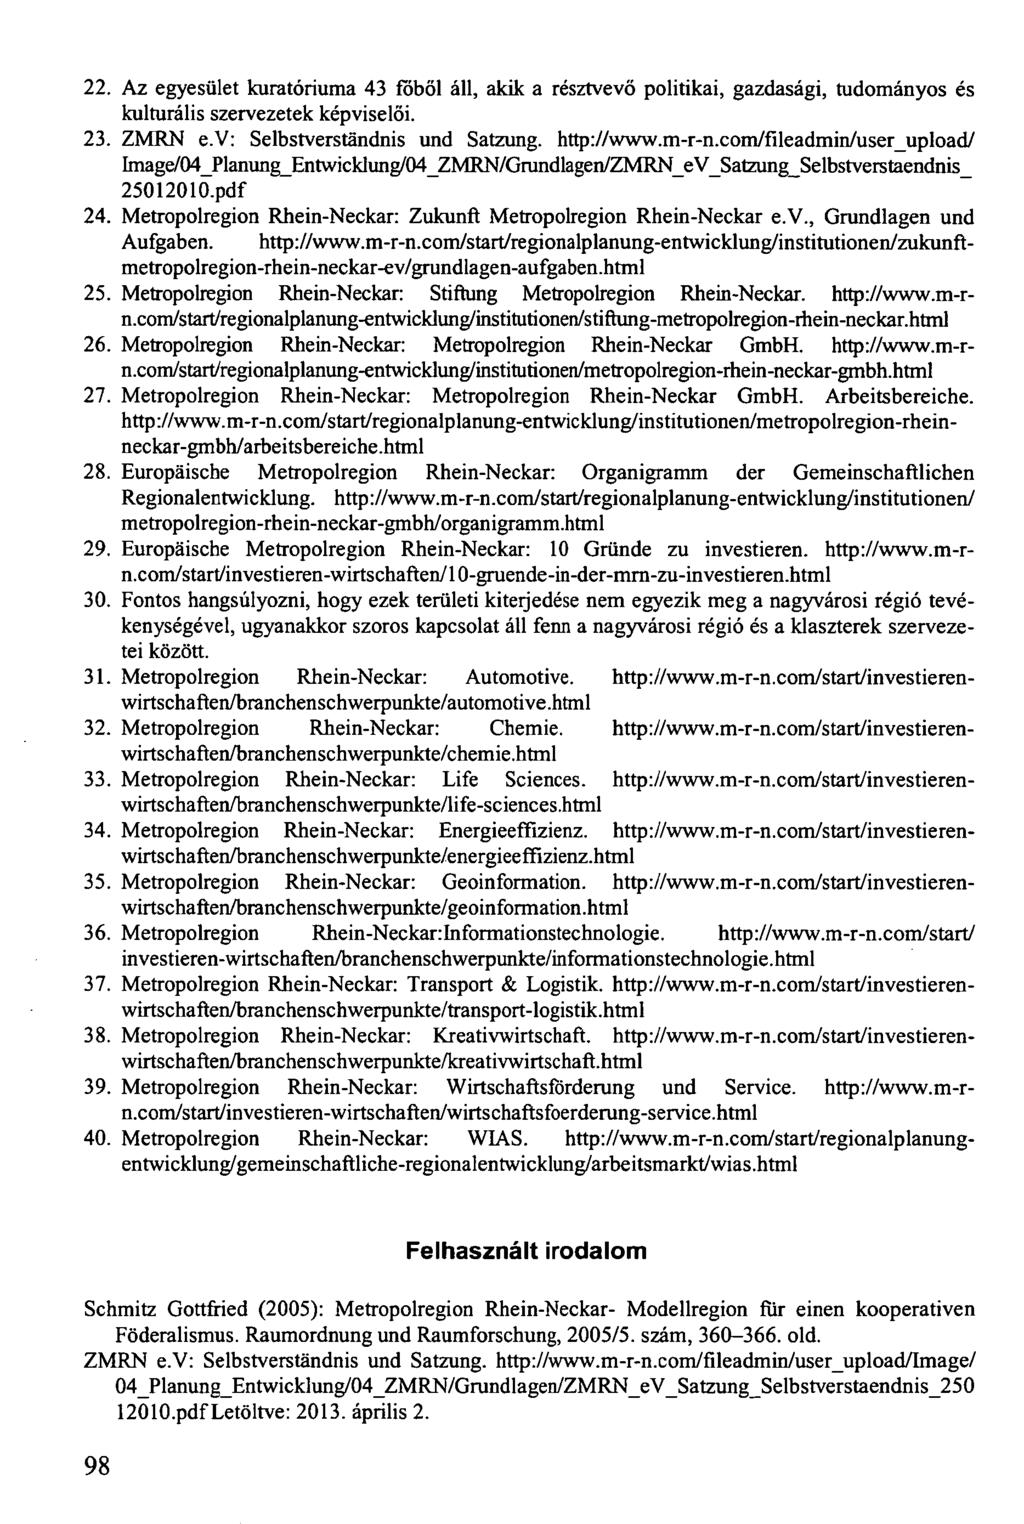 22. Az egyesület kuratóriuma 43 főből áll, akik a résztvevő politikai, gazdasági, tudományos és kulturális szervezetek képviselői. 23. ZMRN e.v: Selbstverständnis und Satzung, http://www.m-r-n.